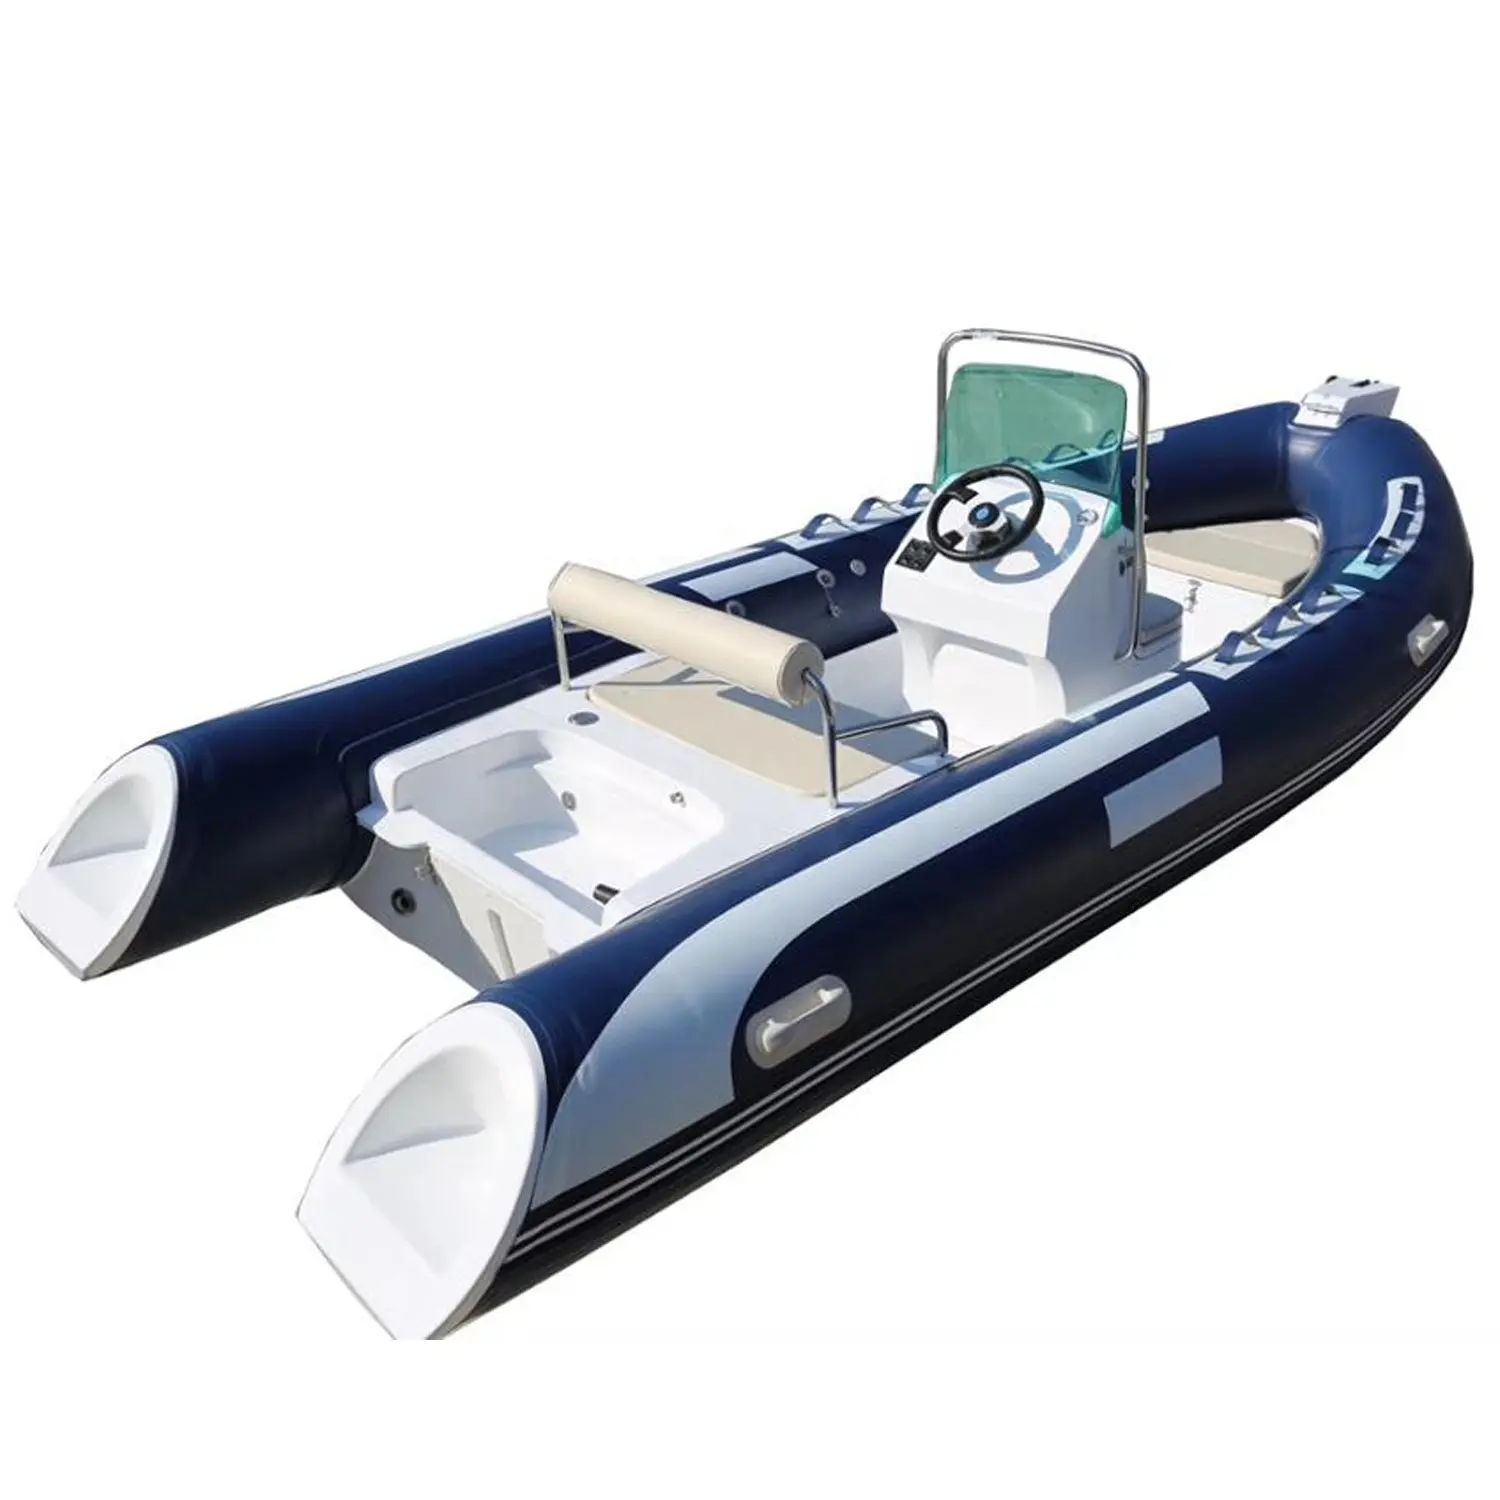 6.8m Rigid Rib PVC Inflatable Boats